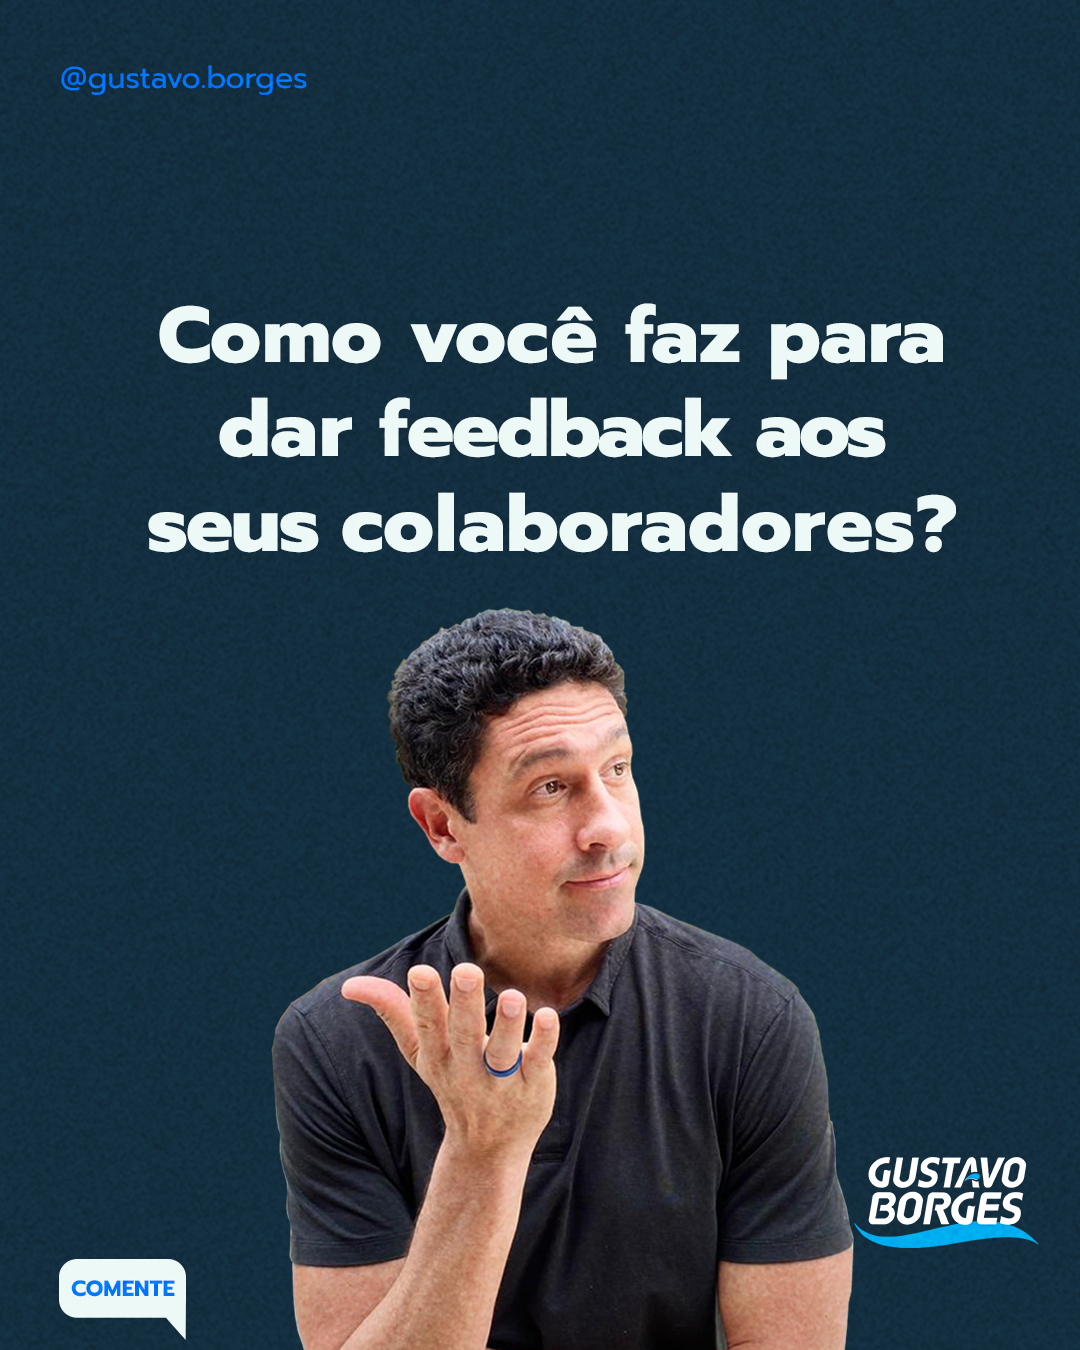 Texto com foto do Gustavo Borges: "Como você faz para dar feedback aos seus colaboradores?"